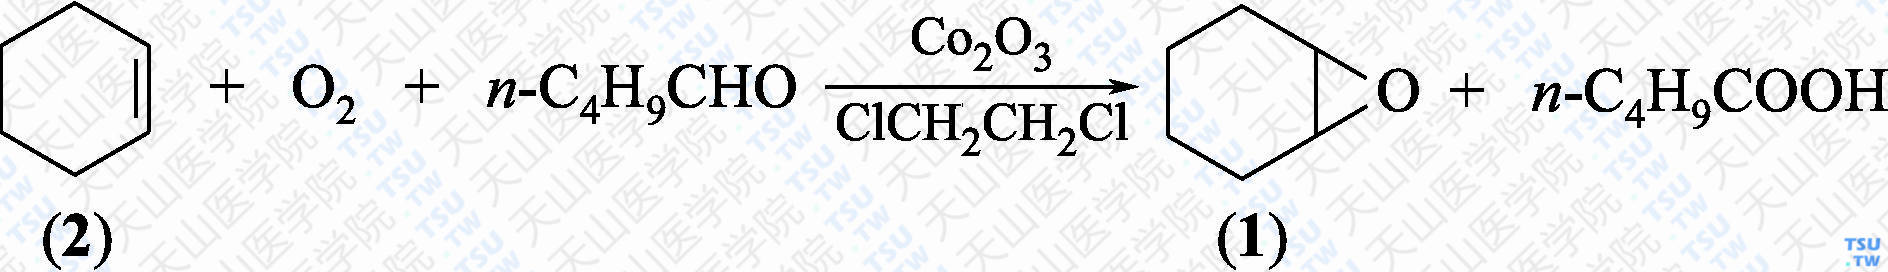 1，2-环氧环己烷（分子式：C<sub>6</sub>H<sub>10</sub>O）的合成方法路线及其结构式